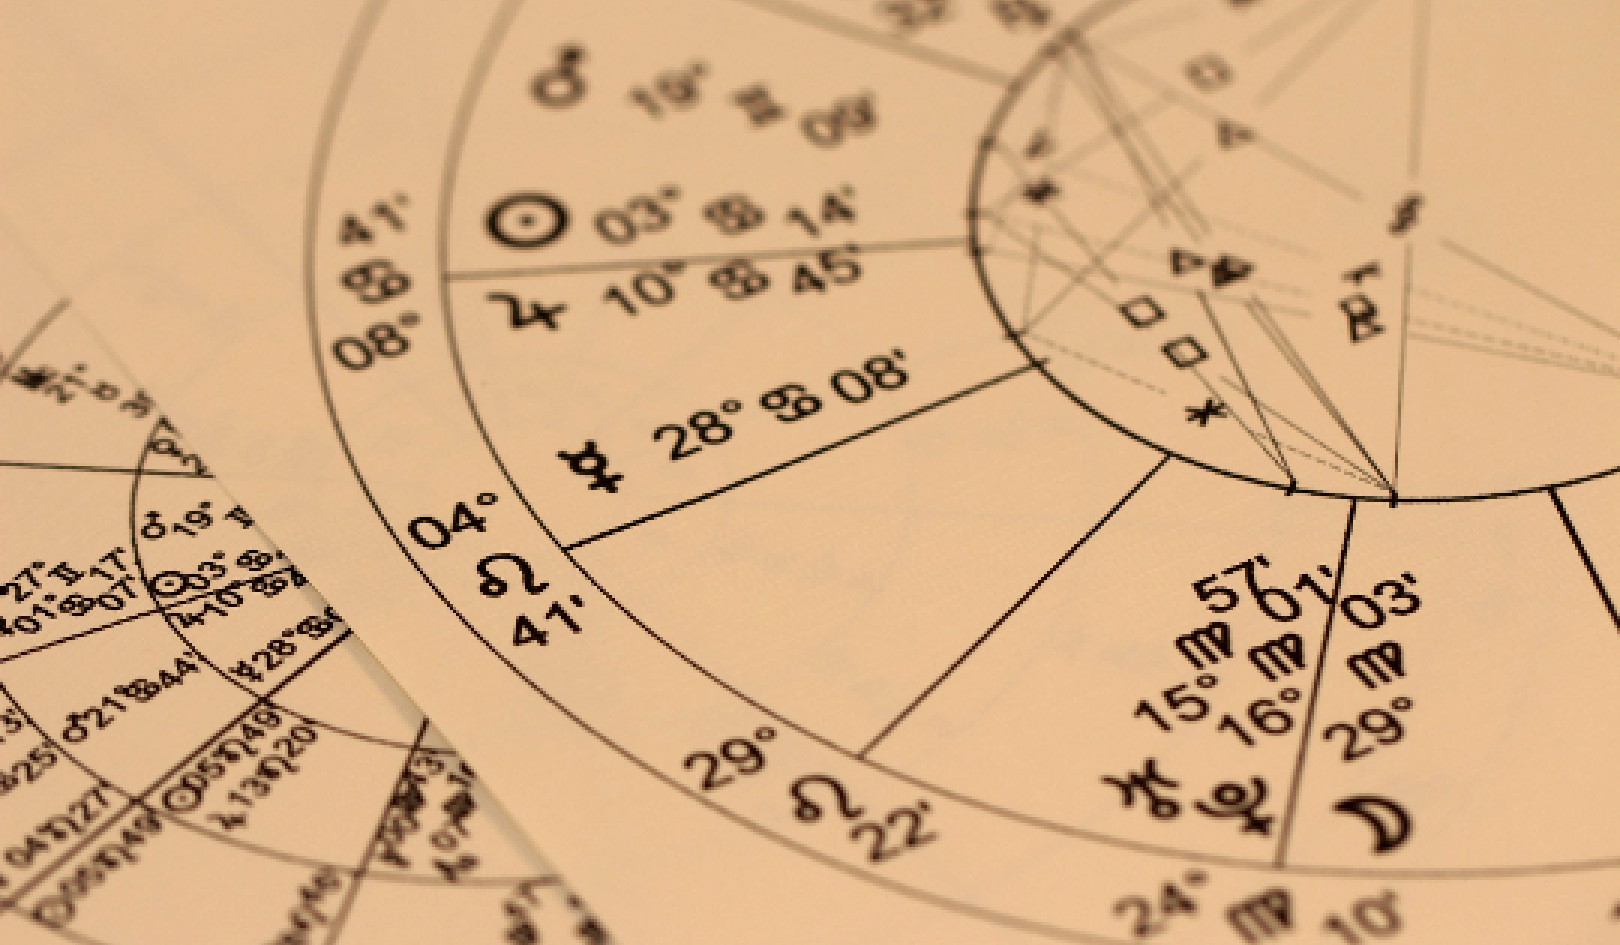 Wetenskap en Astrologie: Eksperimente by die huis